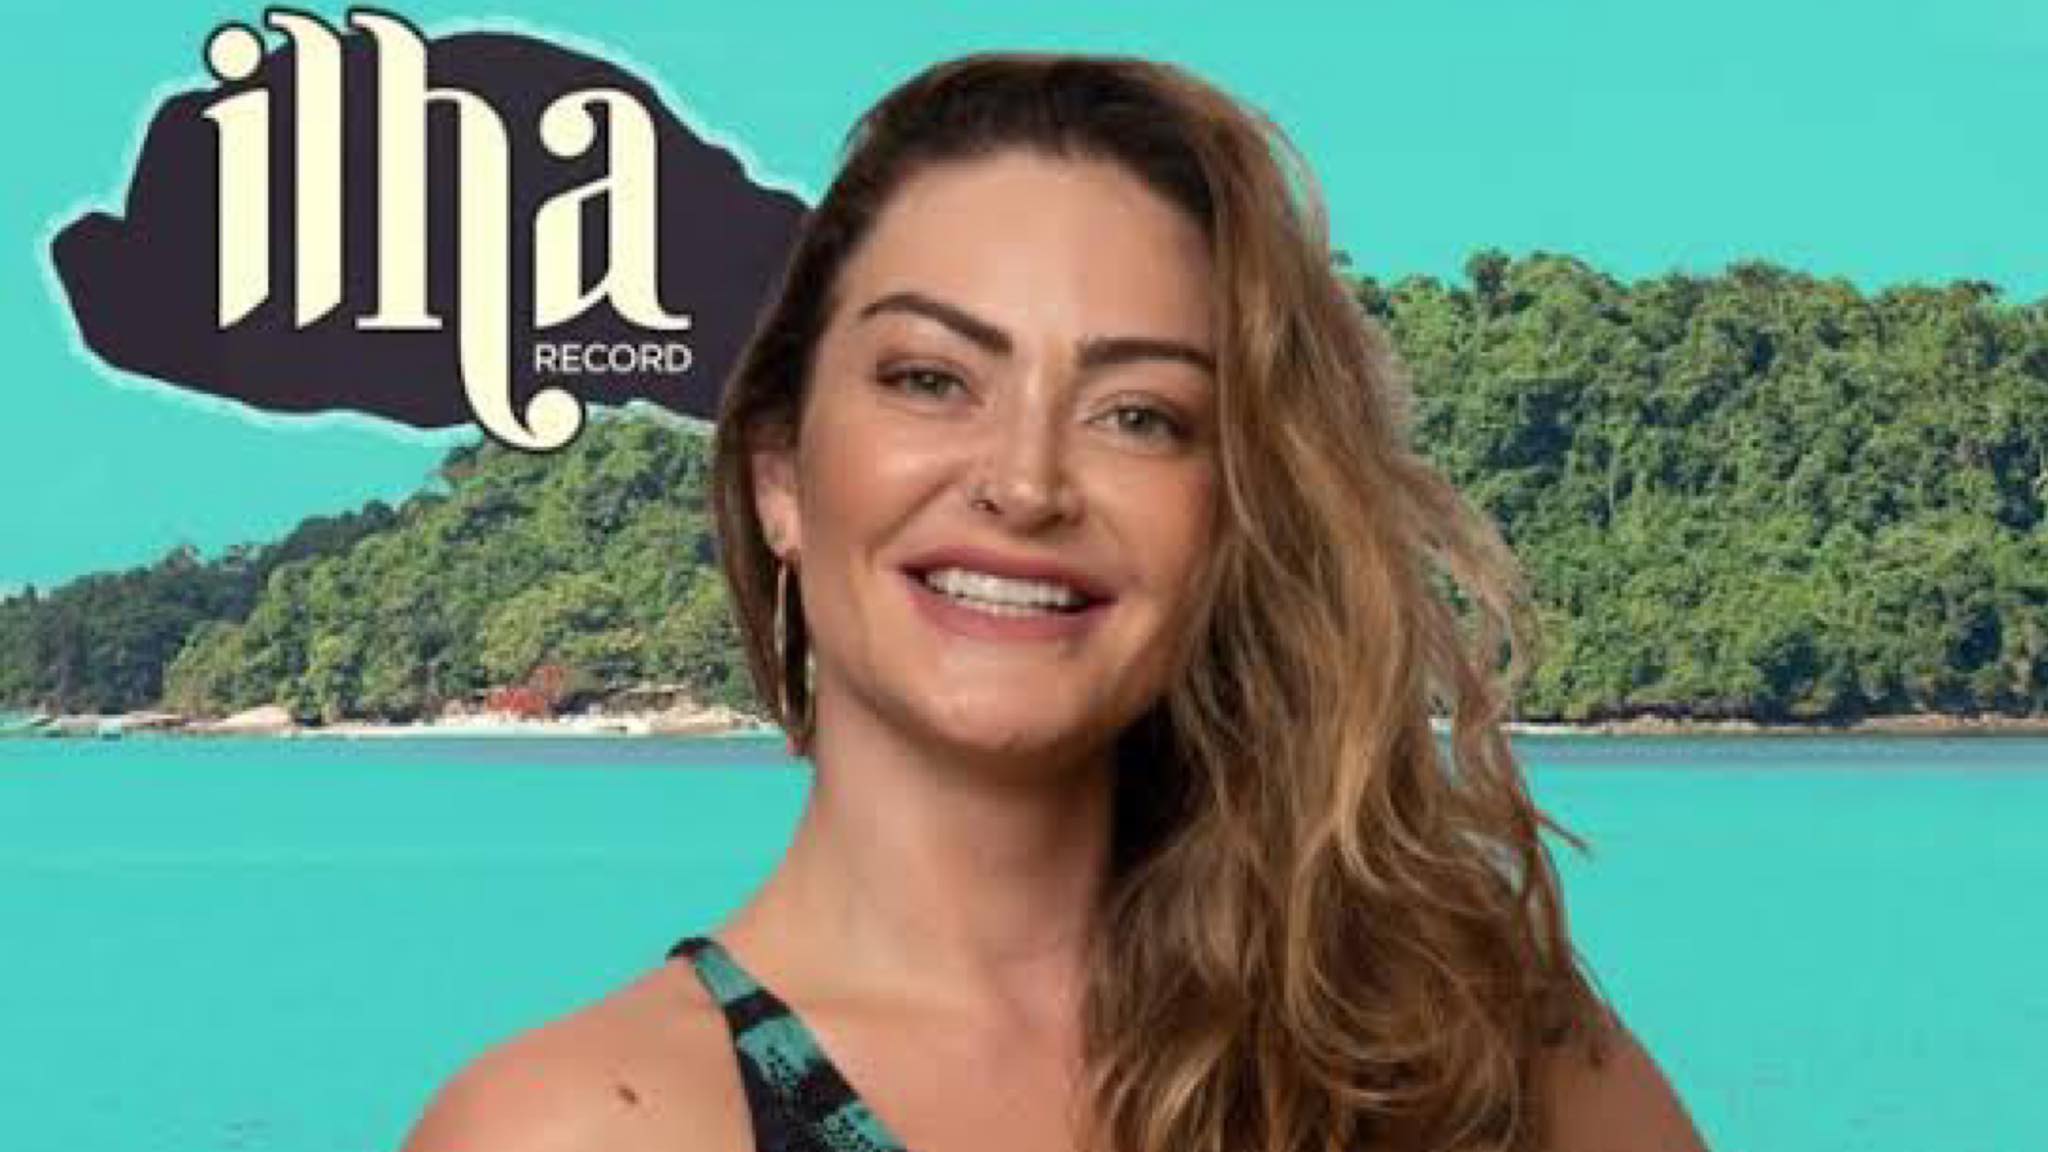 Laura Keller tem 34 anos, um filho já trabalhou na Globo e agora está no Ilha Record. Fonte: Divulgação